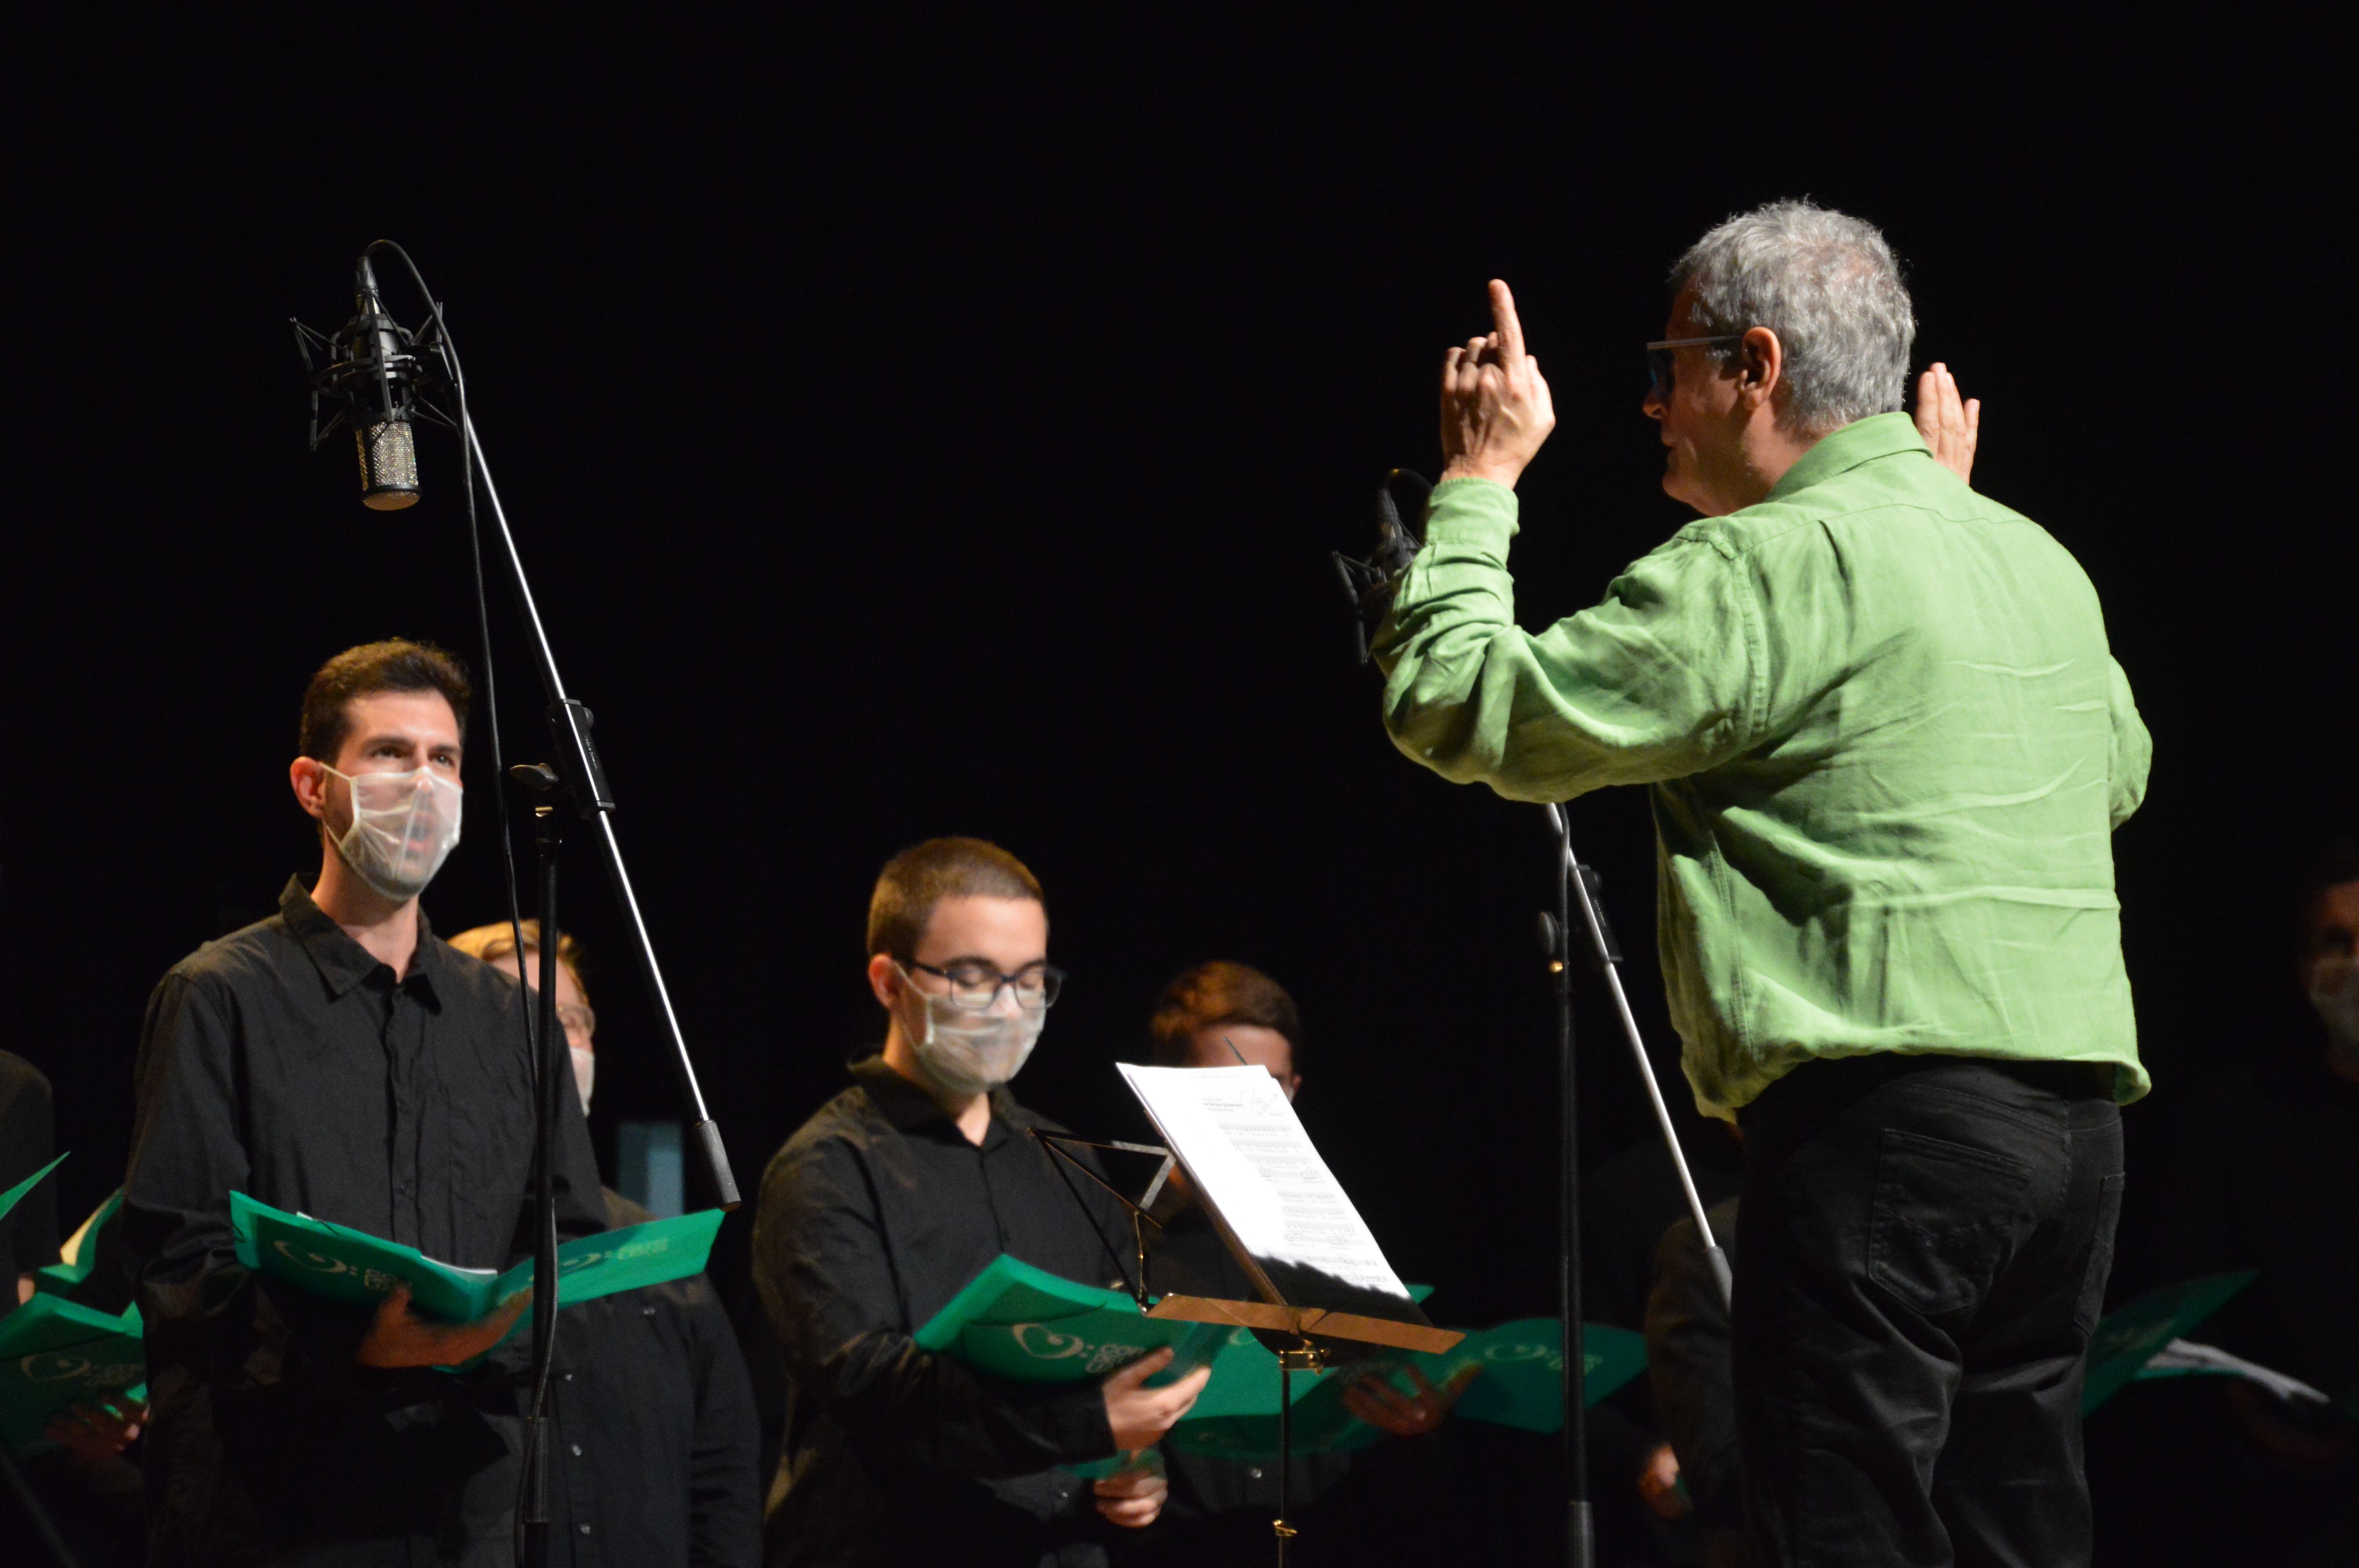 Concert de corals de Cerdanyola amb el Cor Ítaca, el Cor de la UAB i el Cor de Dones per la Pau. FOTO: Nora Muñoz Otero